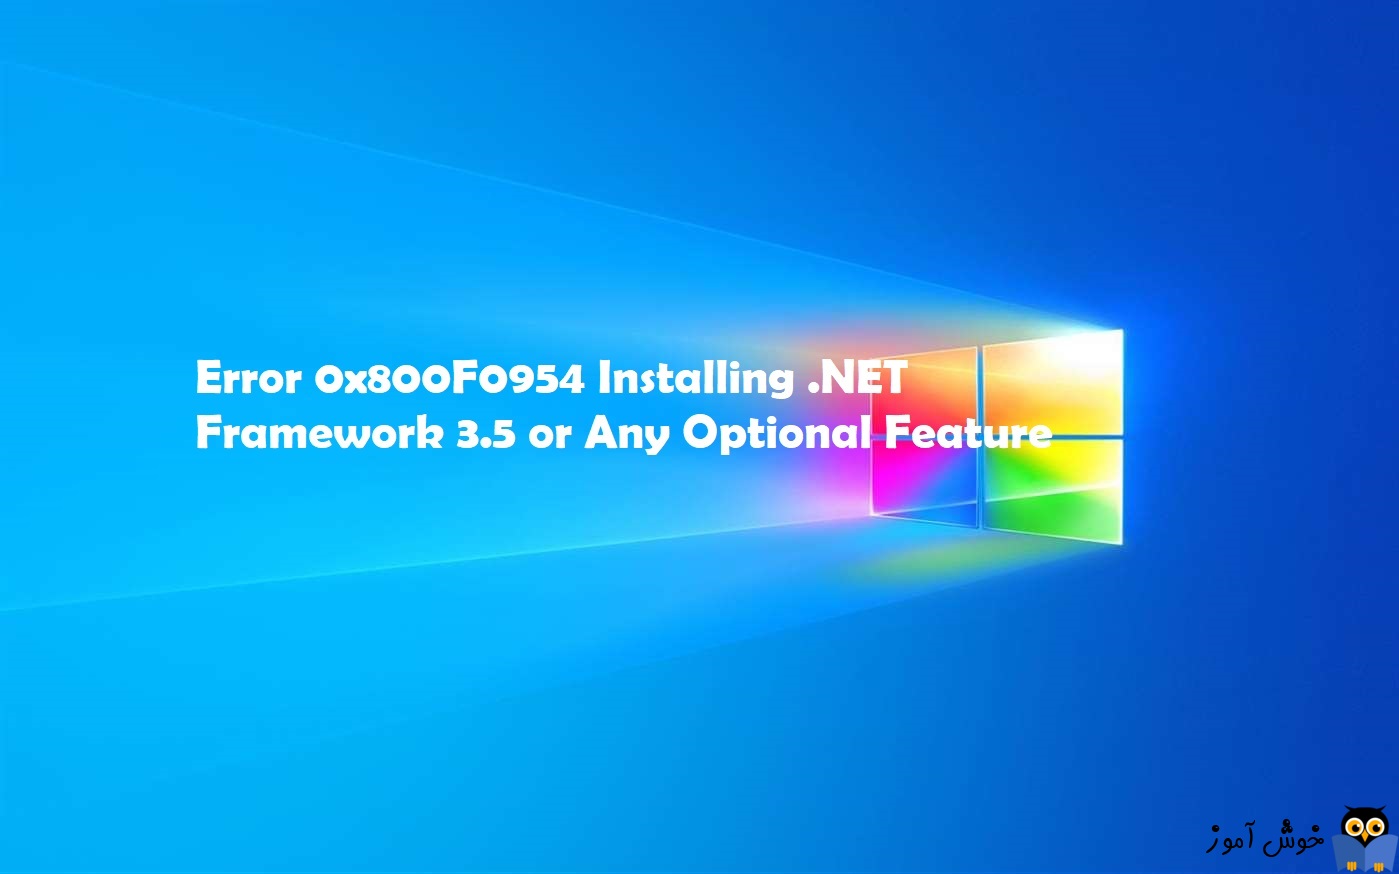 ارور 0x800F0954 هنگام نصب NET Framework 3.5 یا Feature های دیگر در ویندوز